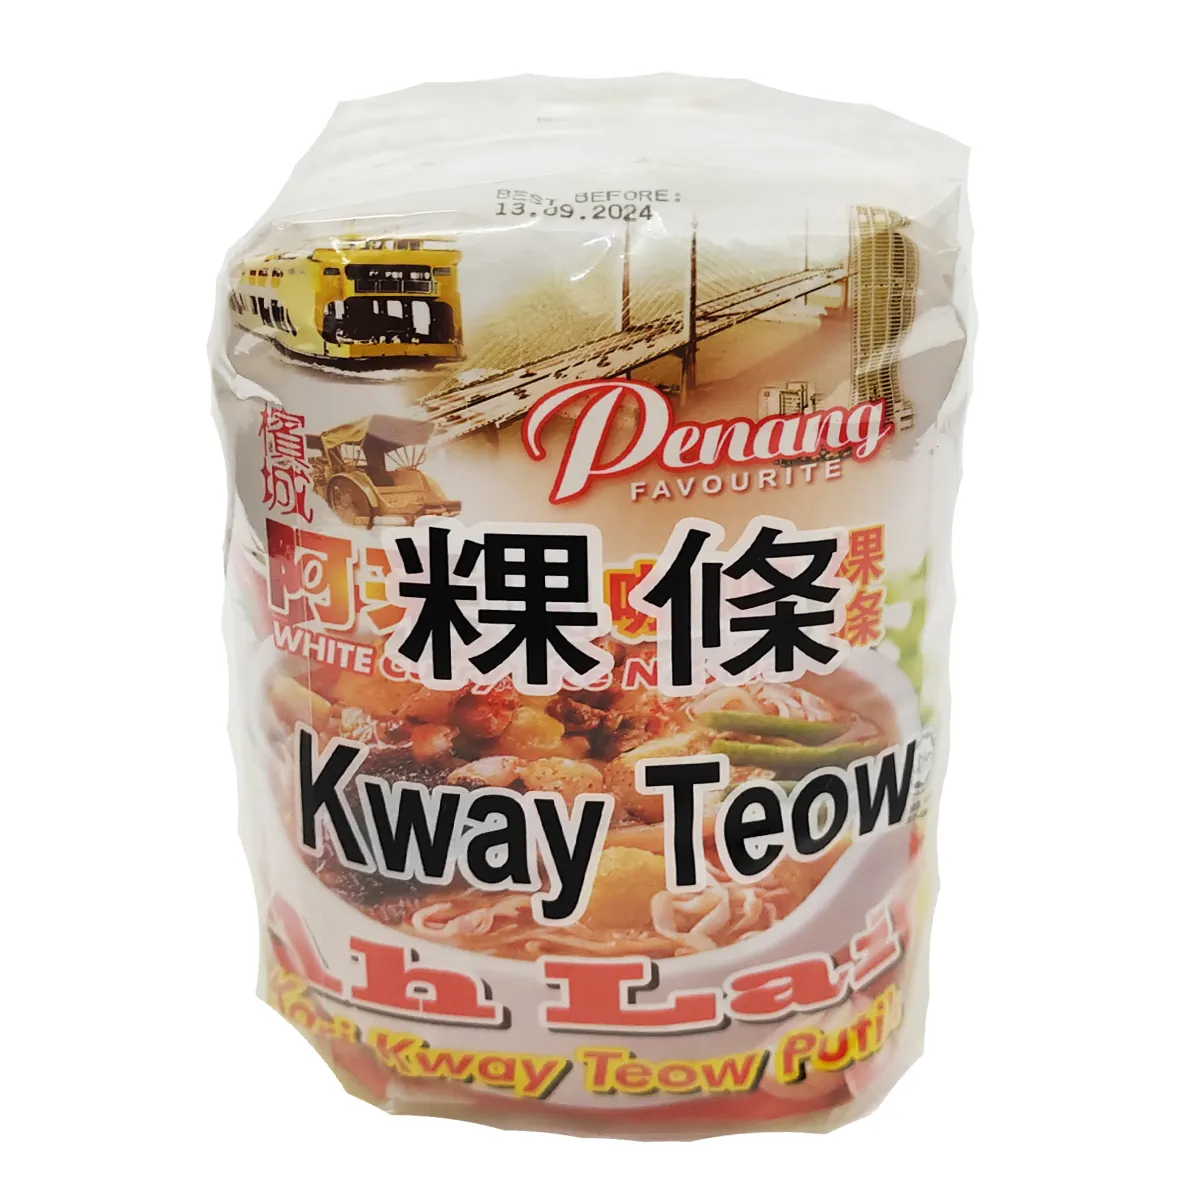 Penang AH lai cà ri Trắng kway teow mì ăn liền làm ở Malaysia penang hương vị mì (95g x 4 gói x 12 túi)